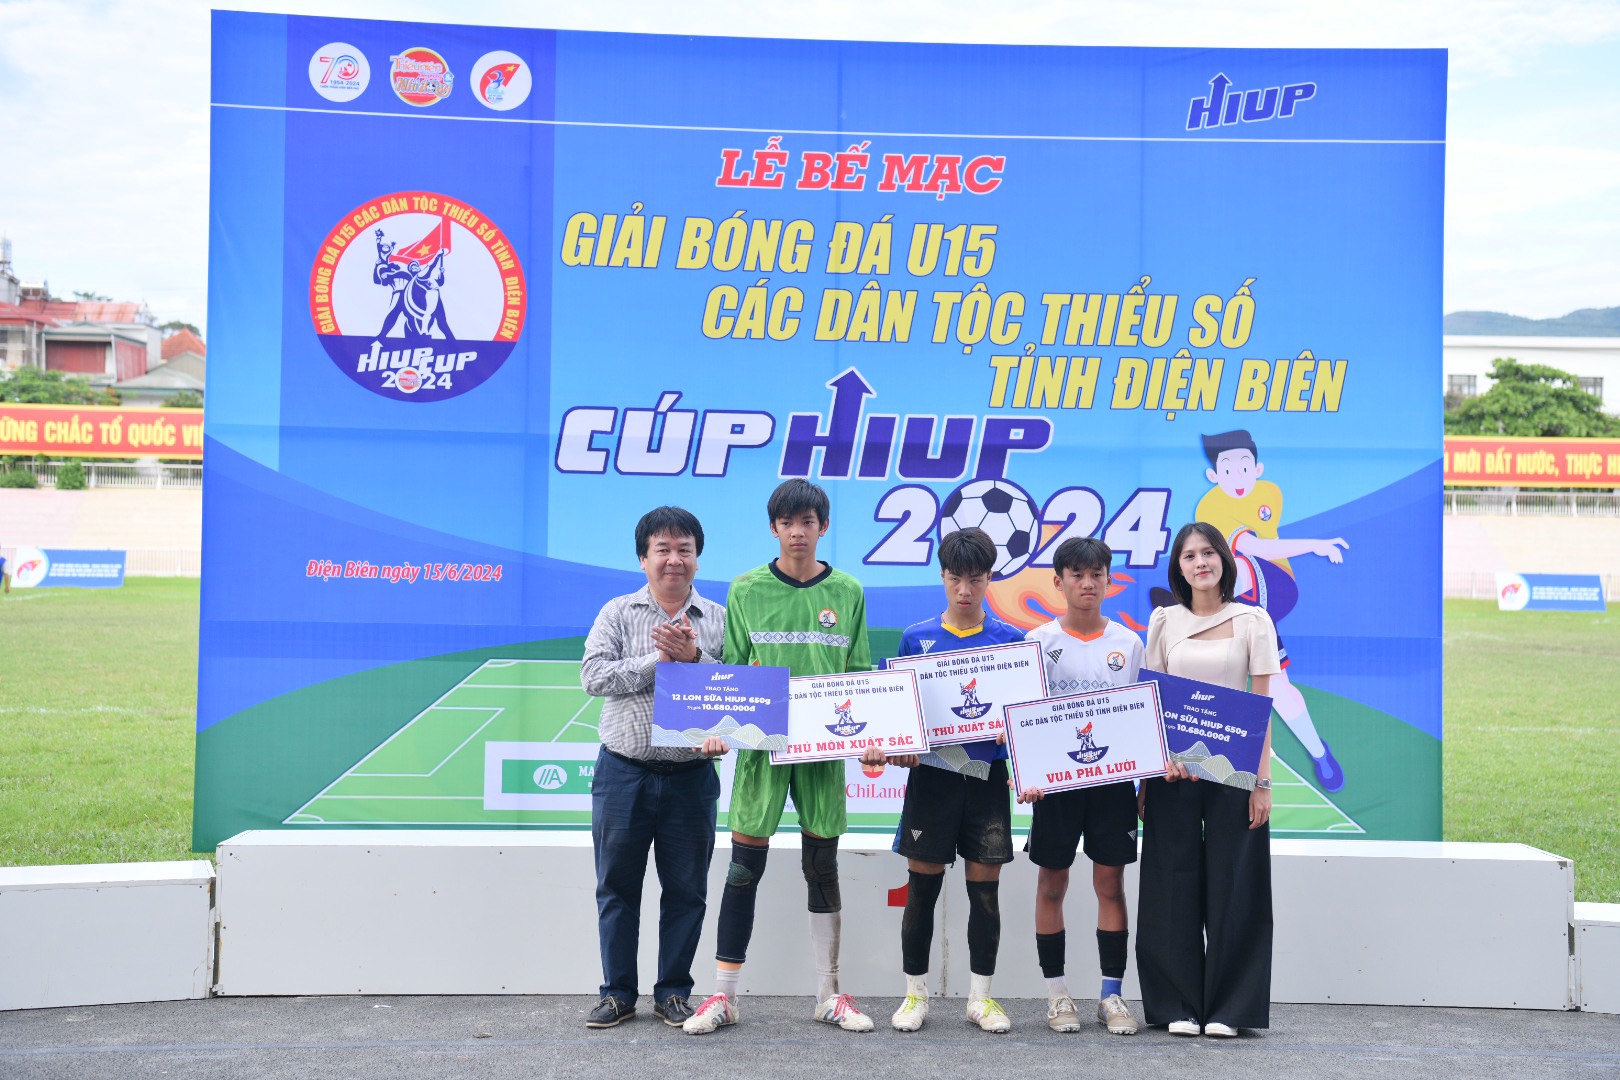 Nhà báo Phan Việt Hùng và Trưởng phòng Truyền thông, Thương hiệu HIUP Đinh Thị Hồng trao giải cá nhân cho các cầu thủ.